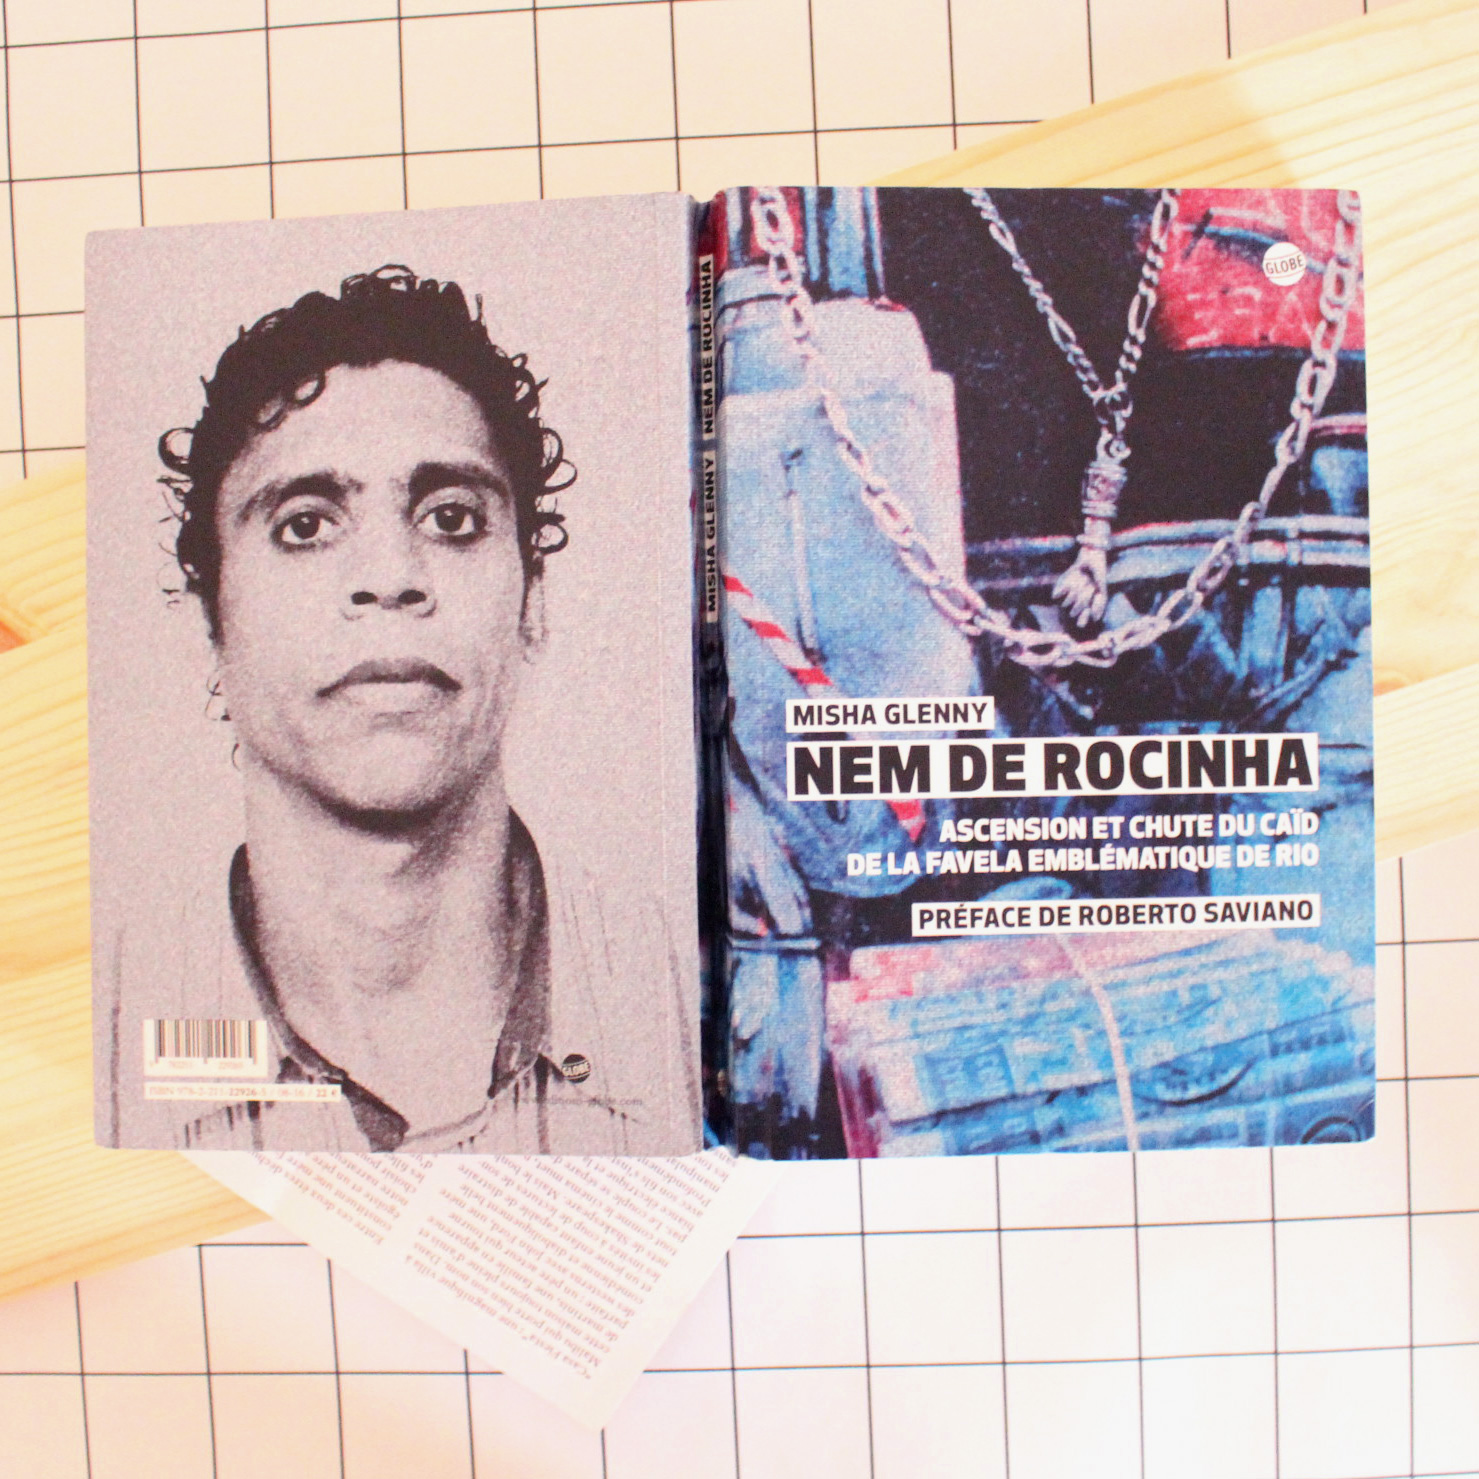 Nem de Rocinha, Misha Glenny, éditions Globe